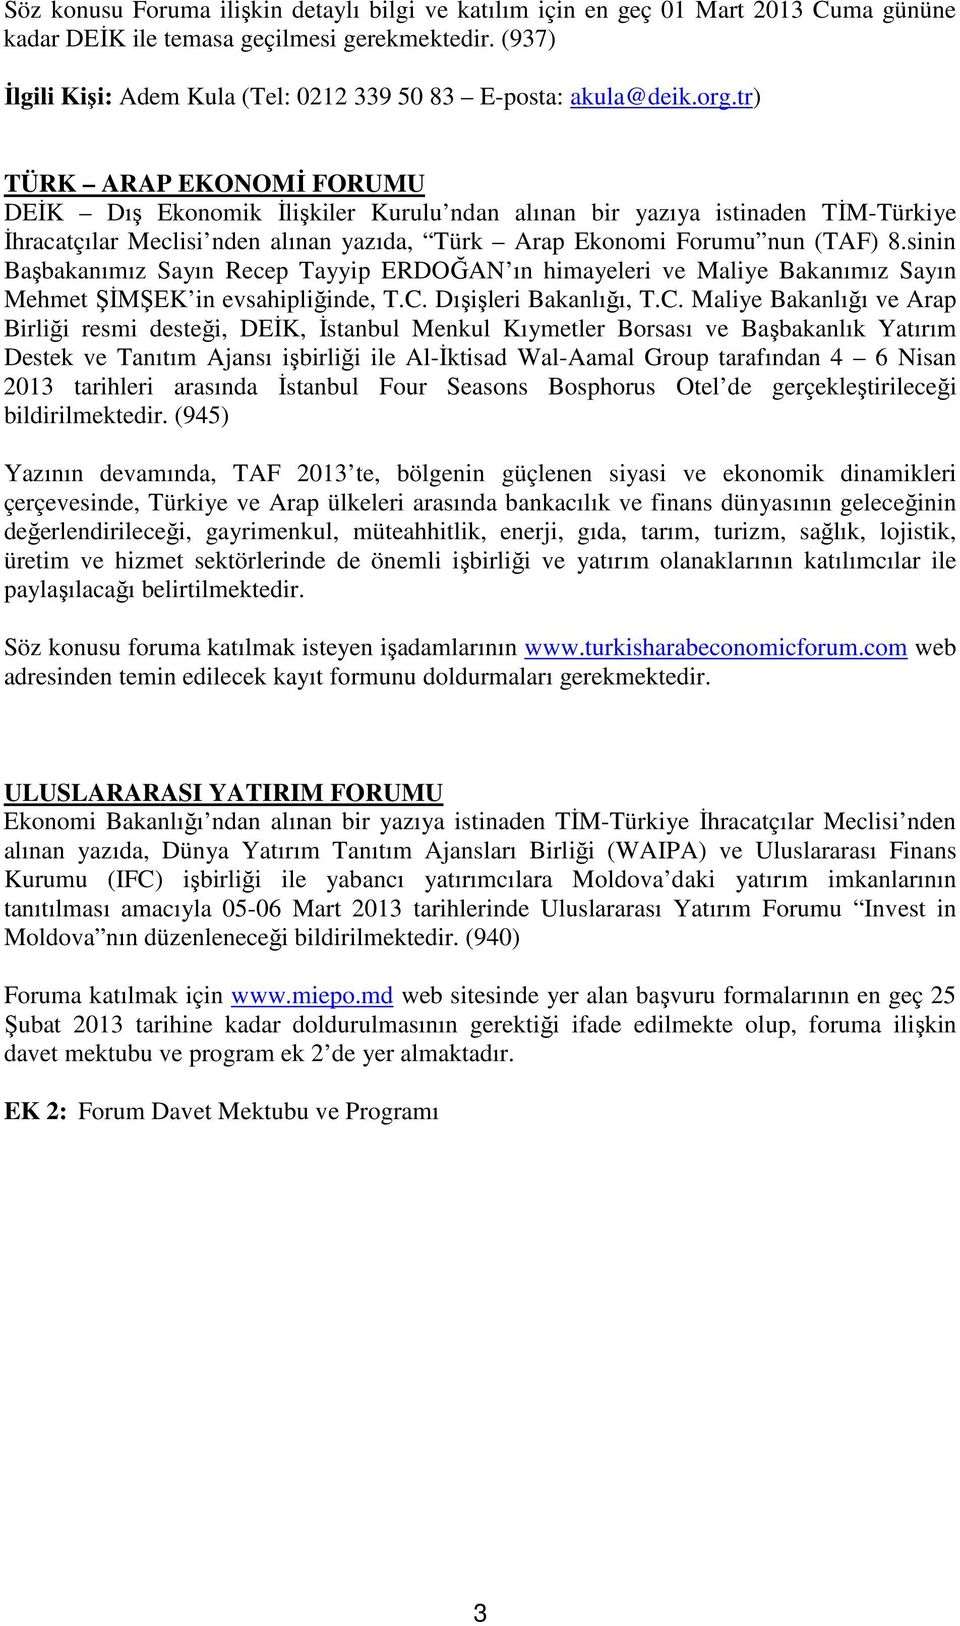 tr) TÜRK ARAP EKONOMİ FORUMU DEİK Dış Ekonomik İlişkiler Kurulu ndan alınan bir yazıya istinaden TİM-Türkiye İhracatçılar Meclisi nden alınan yazıda, Türk Arap Ekonomi Forumu nun (TAF) 8.